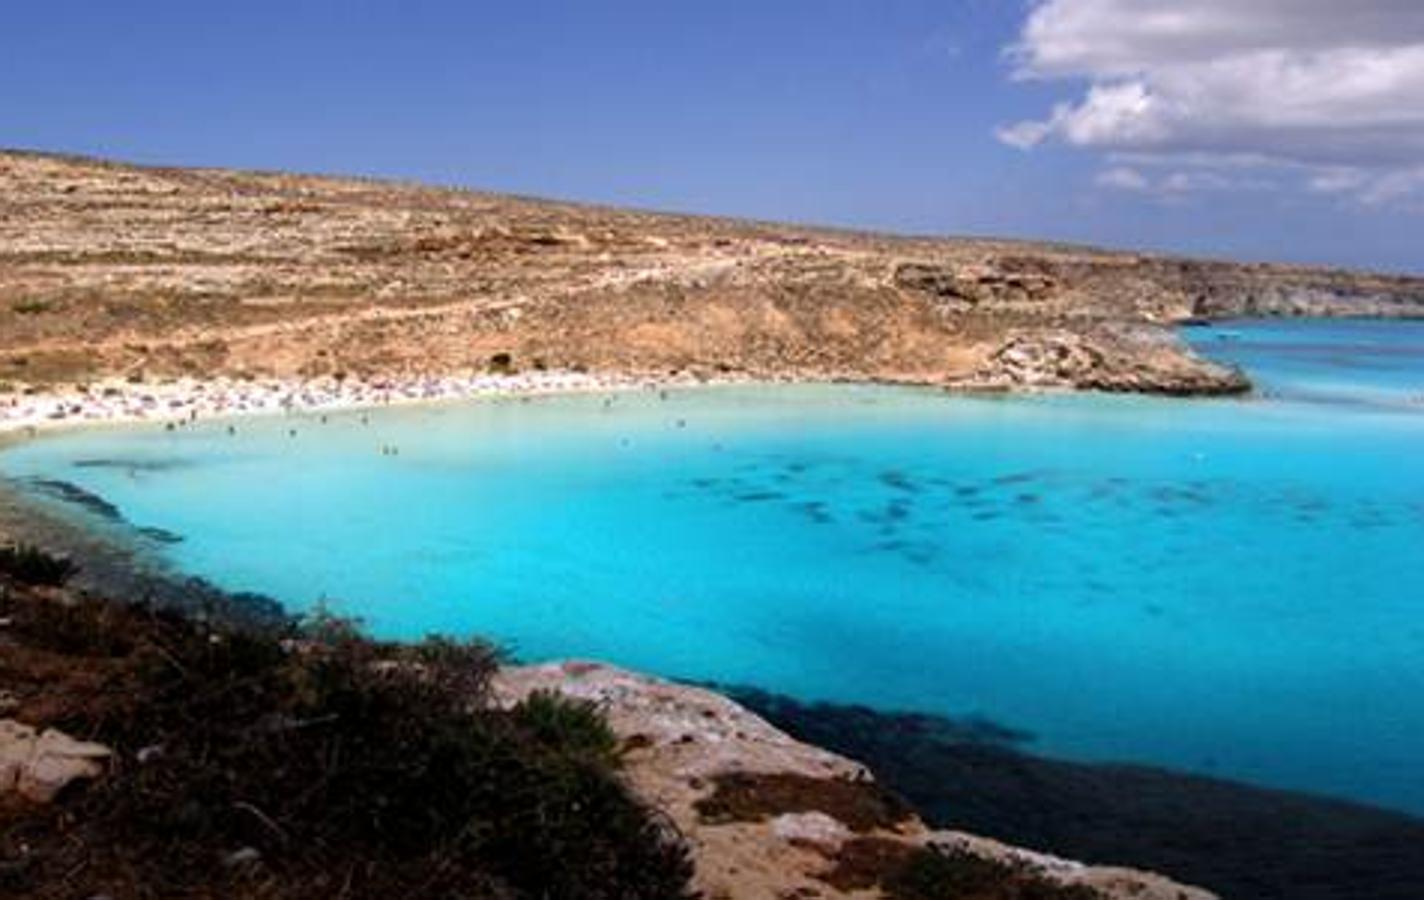 Ubicada en la isla italiana de Lampedusa, la Playa de los Conejos, a pesar de su nombre, se conoce por la aparición de tortugas. Esta playa, con un clima ideal y un entorno perfecto para pasar las vacaciones de verano, ha logrado la posición nº 21.